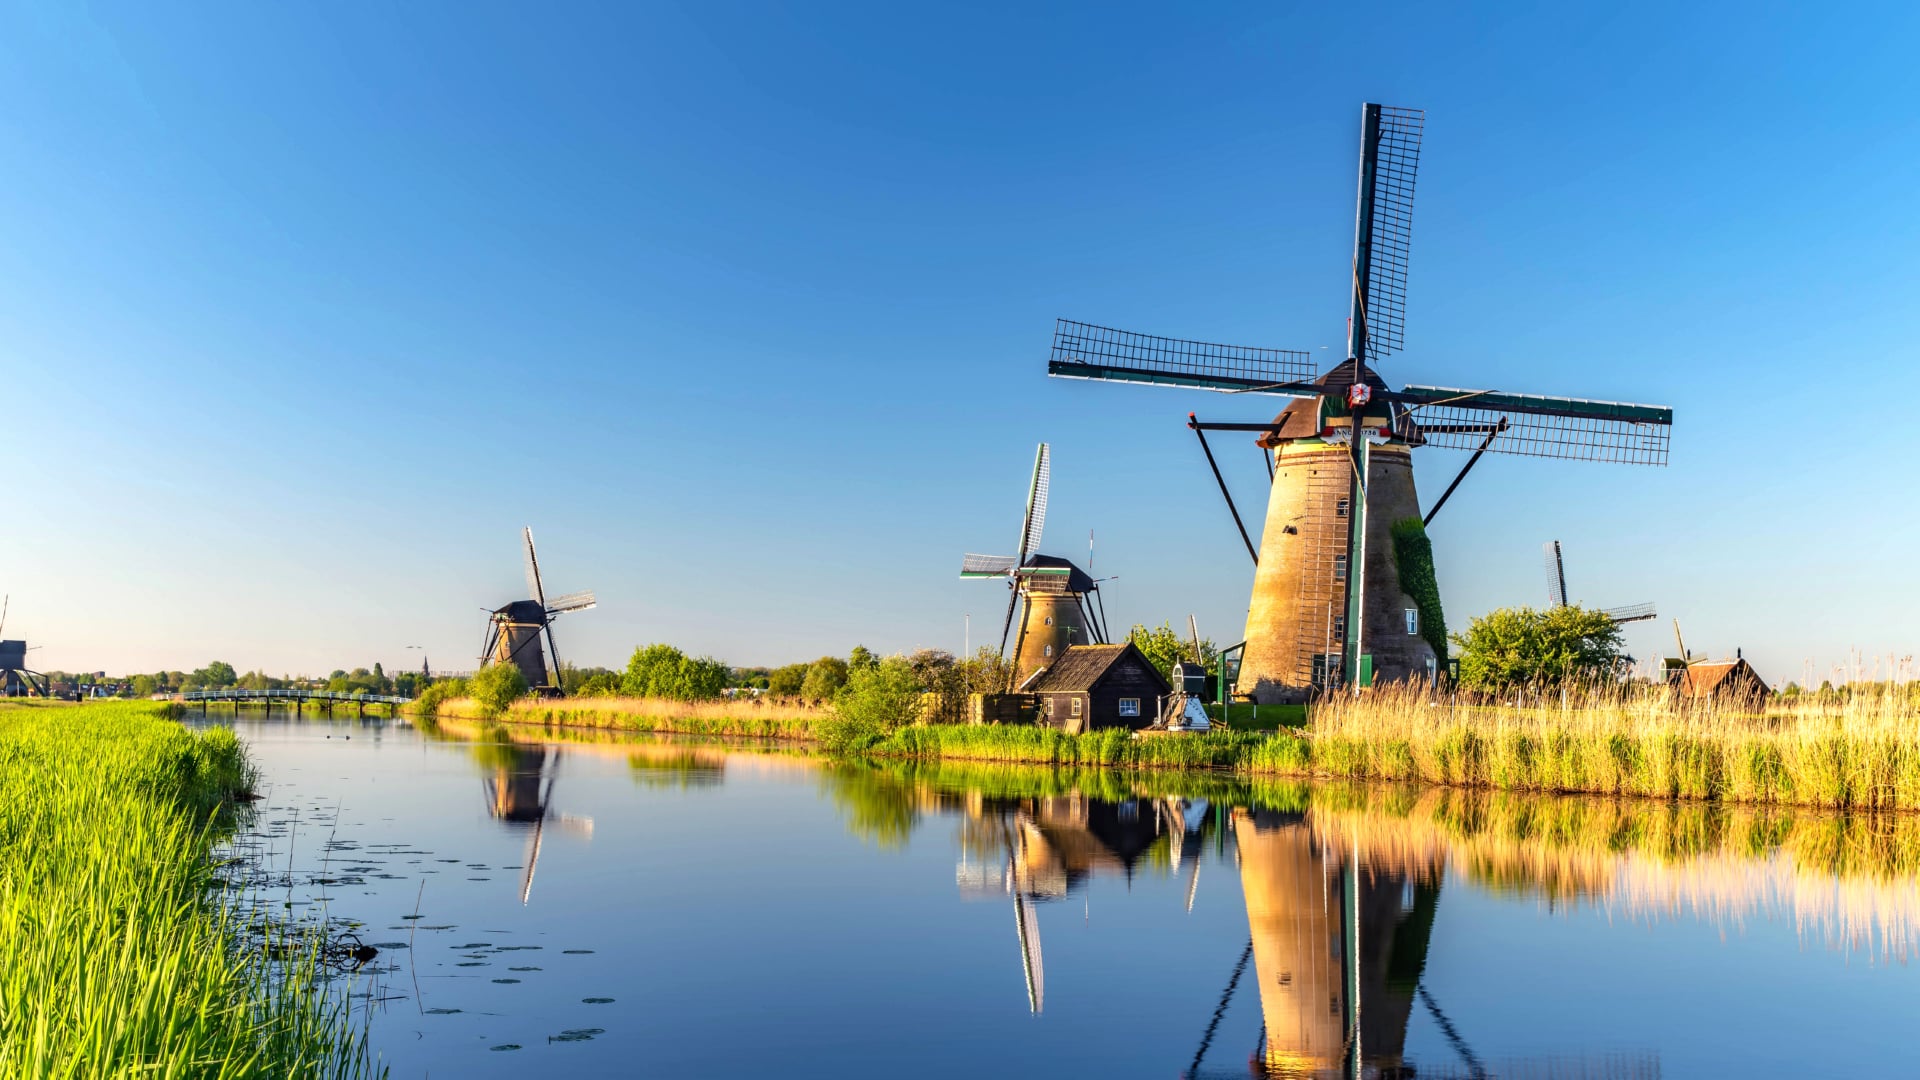 Windmills at Kinderdijk at 1152 x 864 size wallpapers HD quality